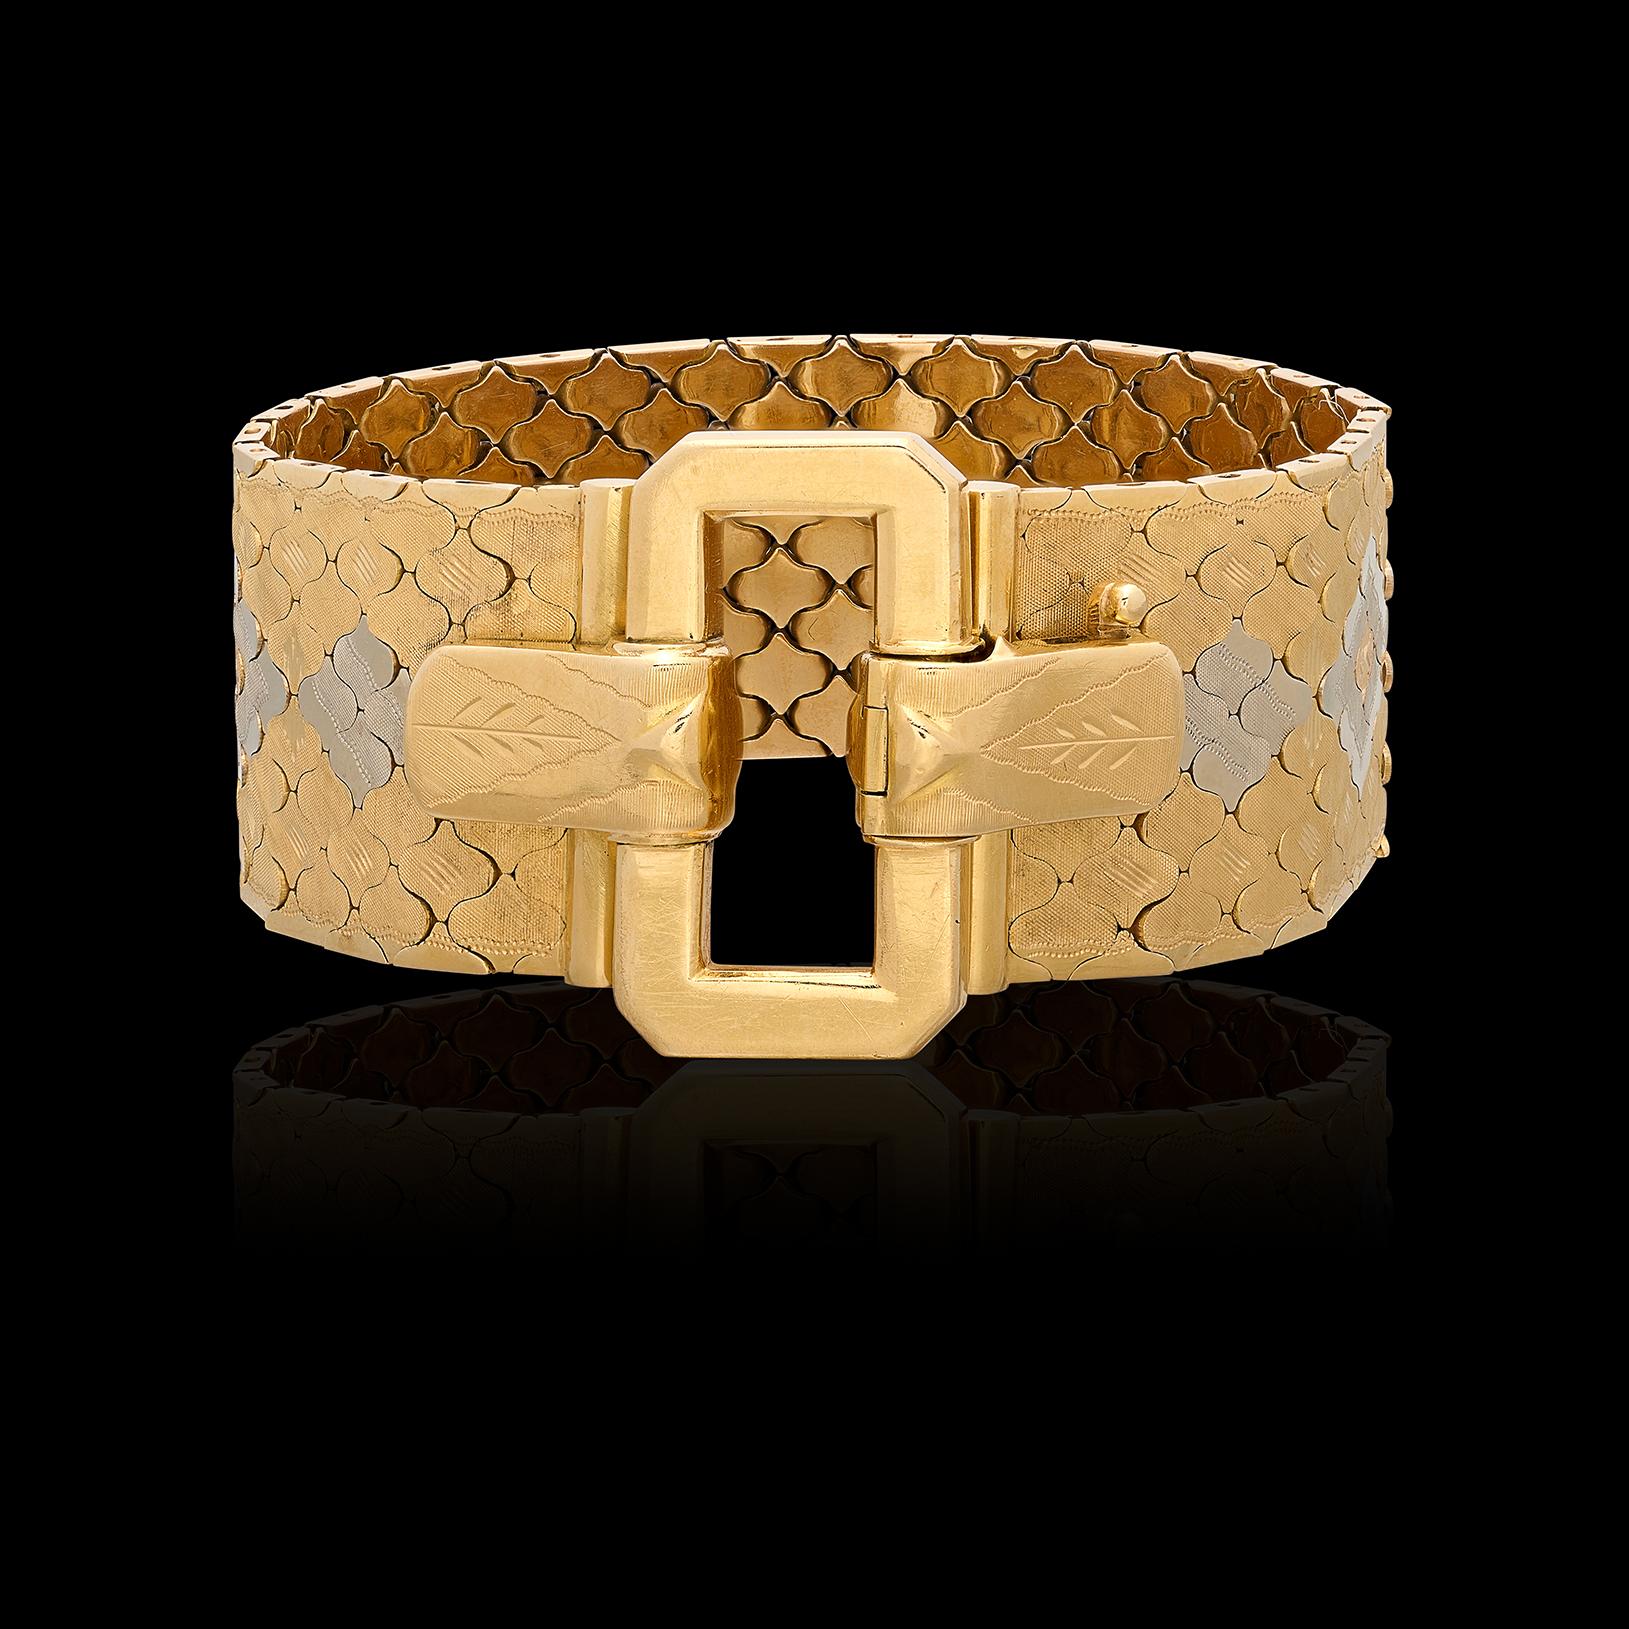 Ein Art-Déco-Armband, das heute noch genauso modisch ist wie zu seiner Entstehungszeit. Dieser 18-Karat-Schmuckstück ist 7 Zoll lang und 1 Zoll breit und verfügt über einen eleganten Schnallenverschluss. Das Armband im Vintage-Stil wiegt stolze 80